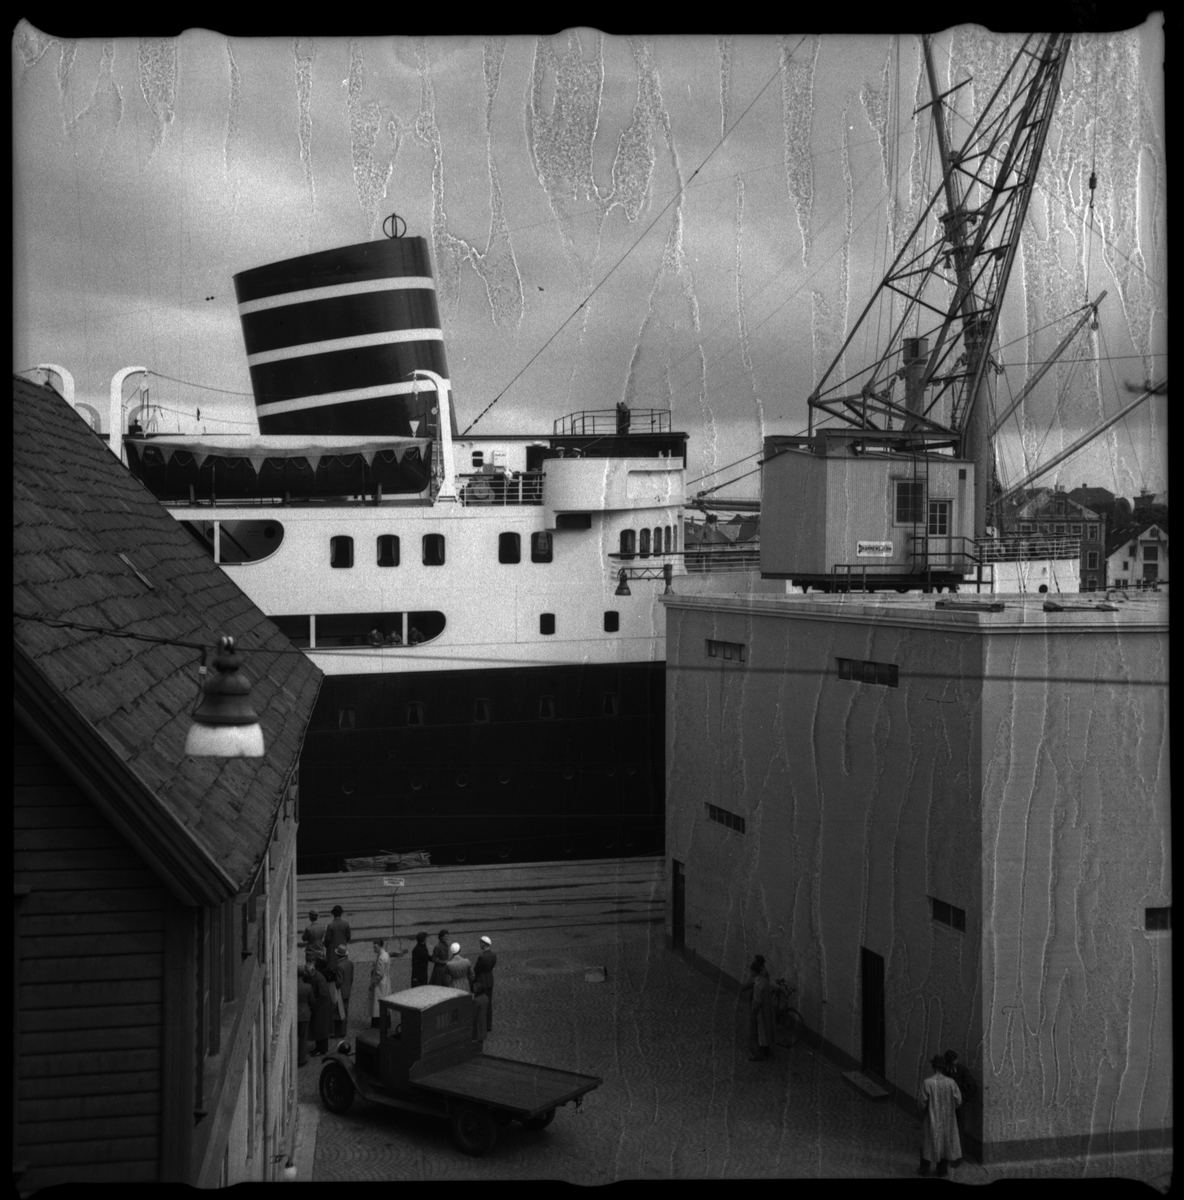 Passasjerskipet M/S "Vega" (bilde 1 og 2) ved havn på Sølyst utenfor Stavanger. En utmagret ku beiter med St. Johanneskirken i bakgrunnen på bilde 3. De Døves Hus på Storhaug er på bilde nr. 4. DSDs sjøbuss "Ekspress" kjører forbi et nes på bilde nr. 6.